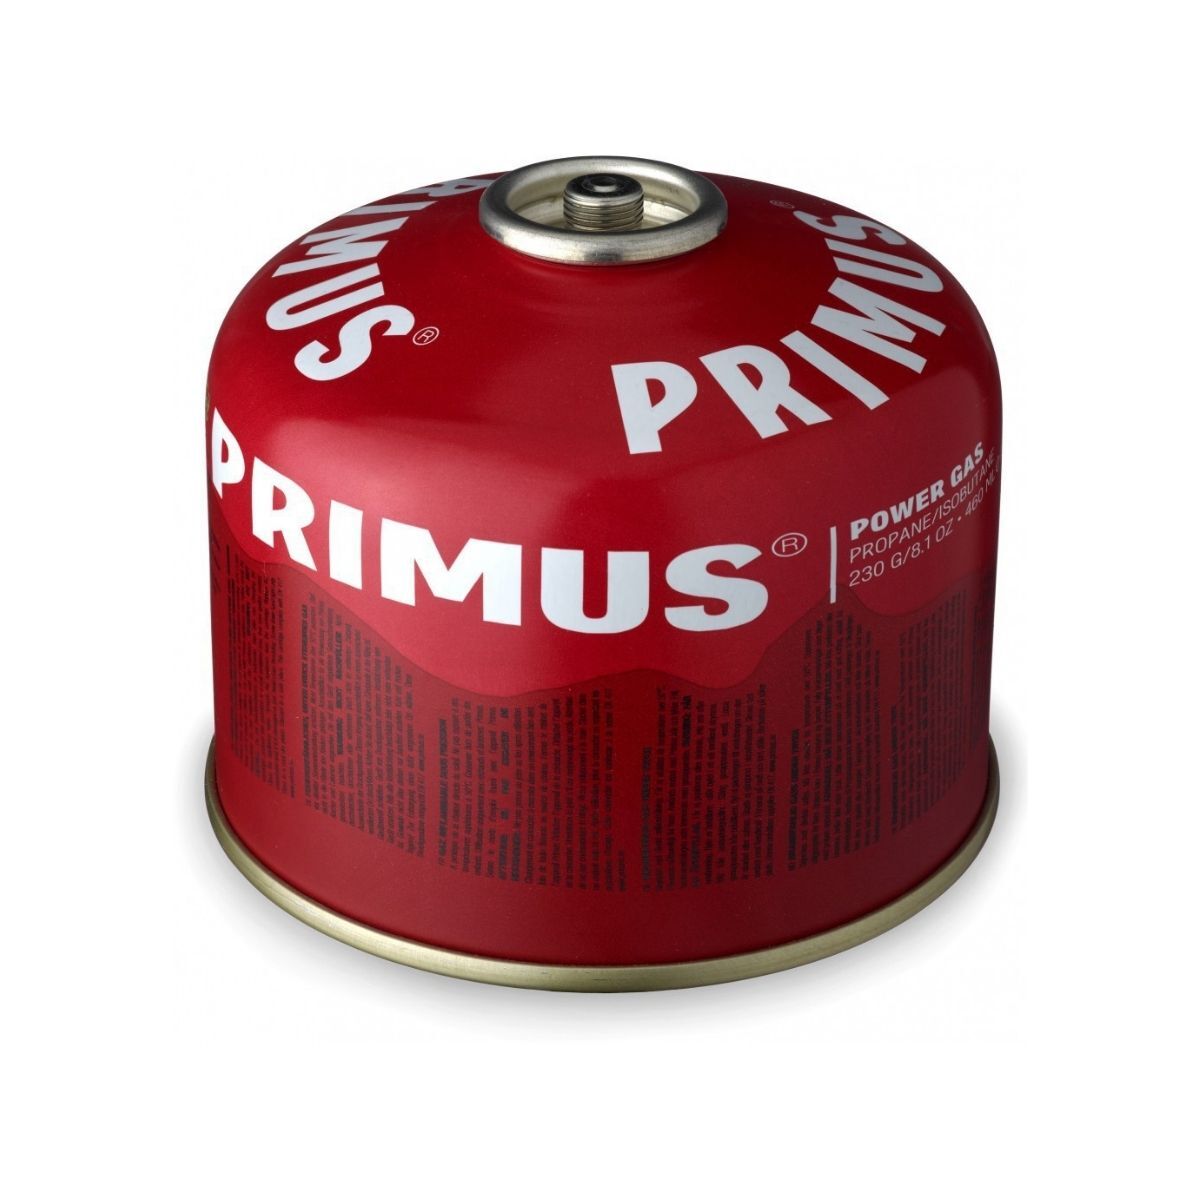 Primus Power Gas 230 g L1 - Gaskartusche